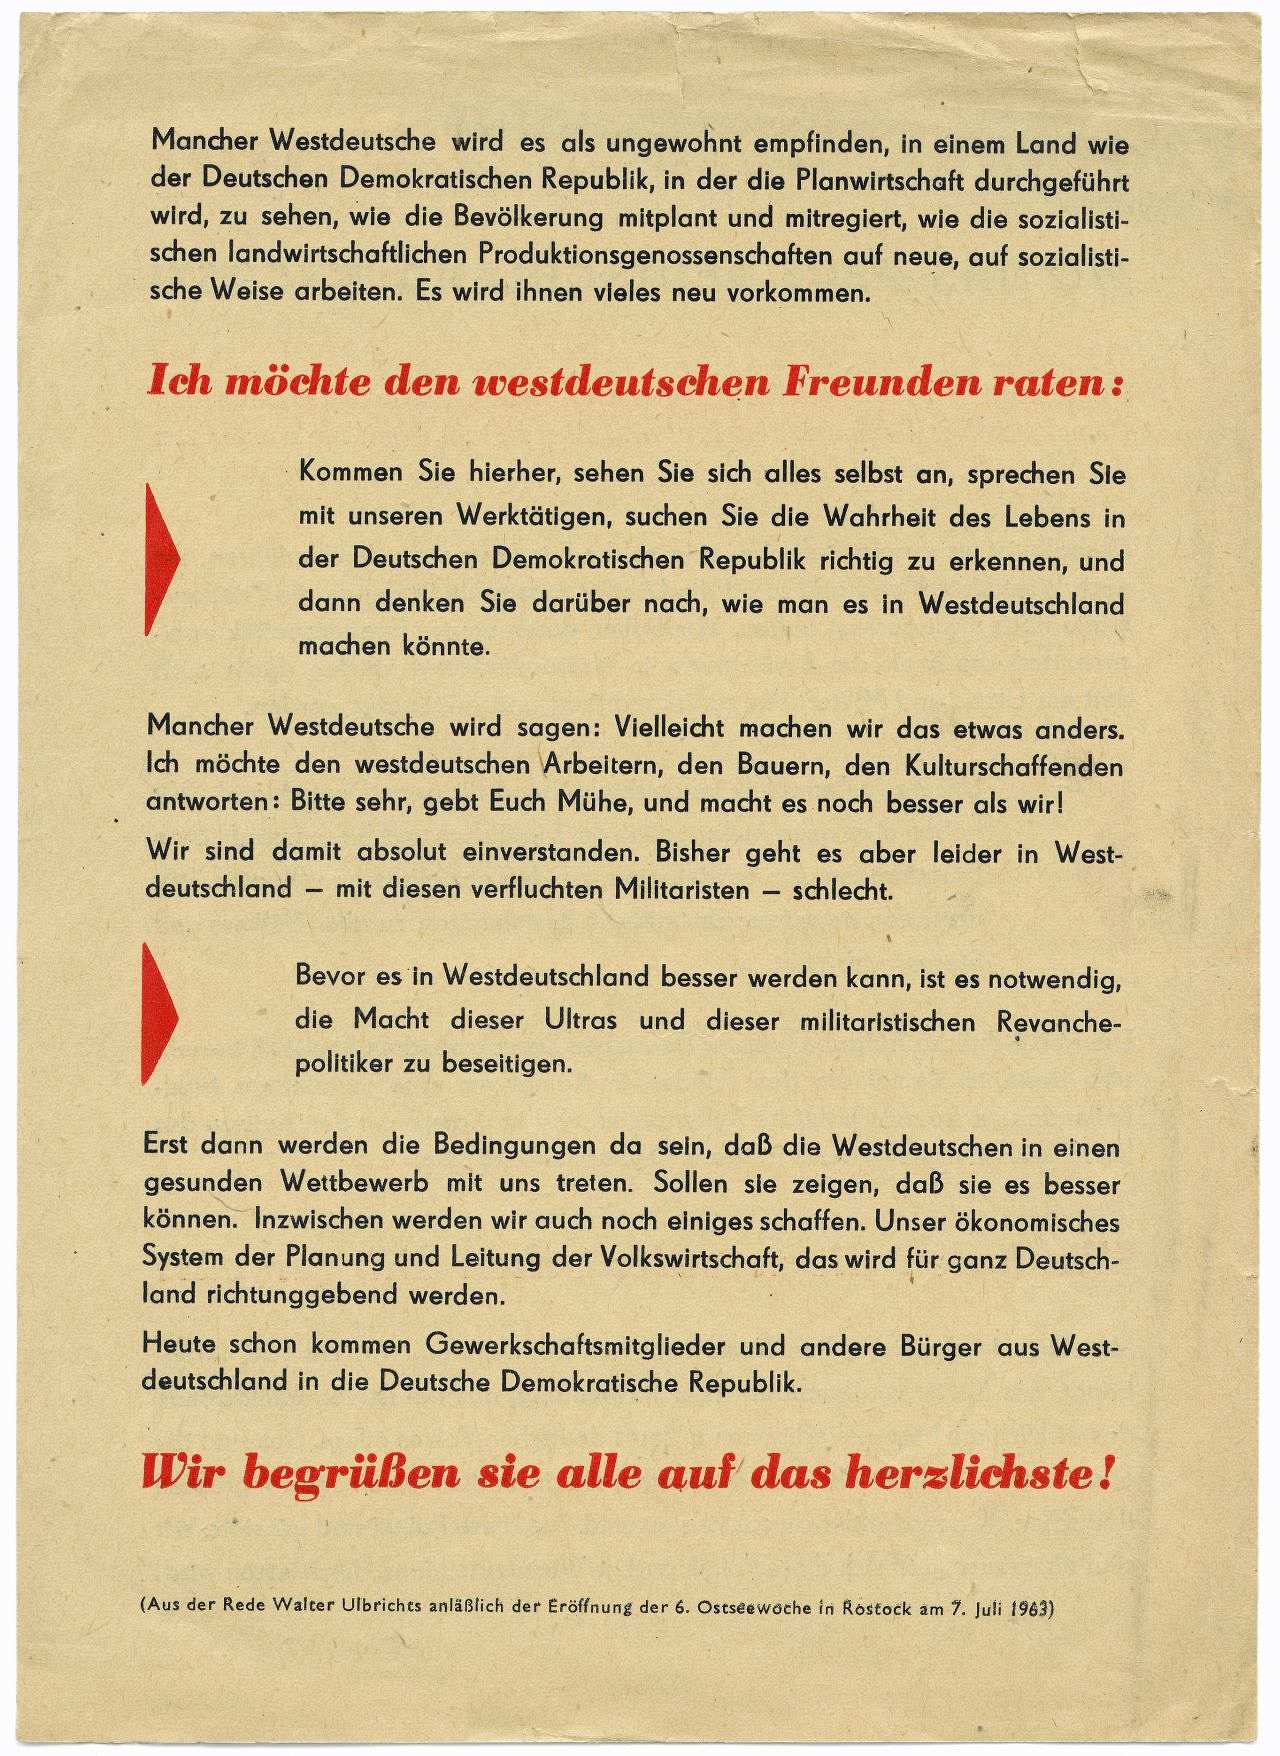 Rückseite des Flugblattes mit dem Titel: Willkommen in der DDR. Fortsetzung des Text. Unter dem Fließtext schließt die Seite mit rotem Fettdruck: Wir begrüßen sie alle auf das herzlichste!